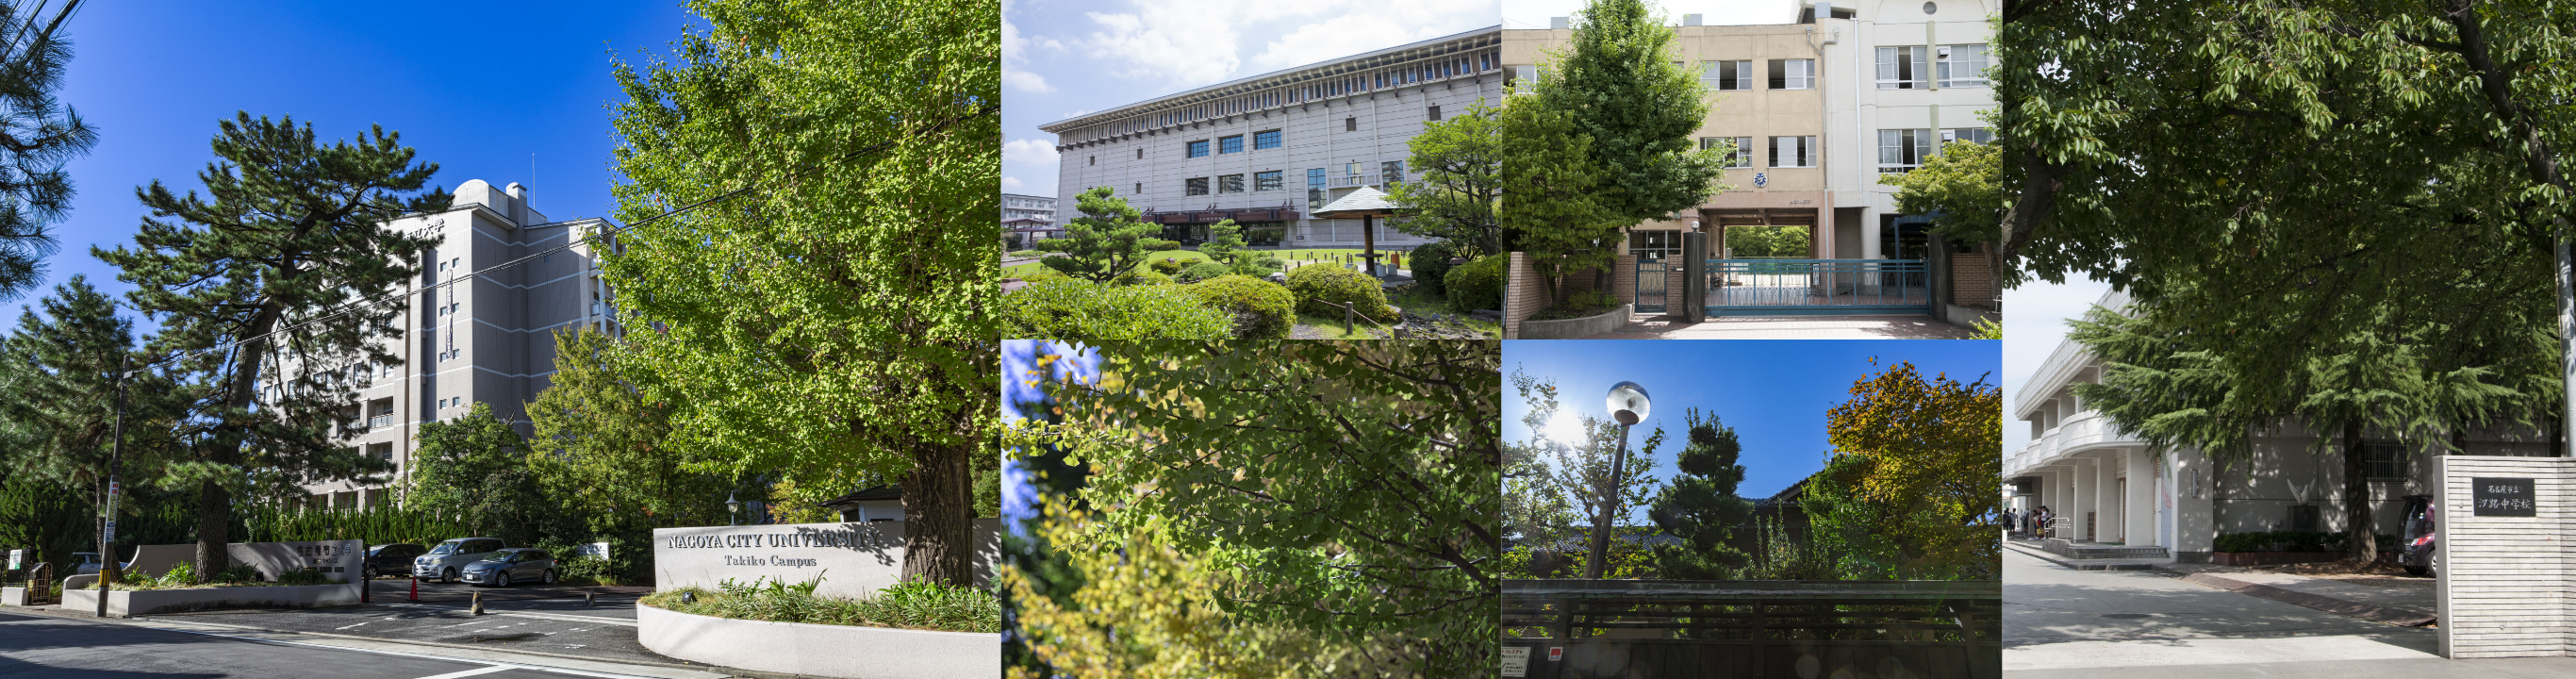 全国で八番目に開校された高等教育機関八高の流れをくむ名古屋市立大学をはじめ<br/>周辺には高校や大学が点在しアカデミックな気風薫る教育環境が整っています。